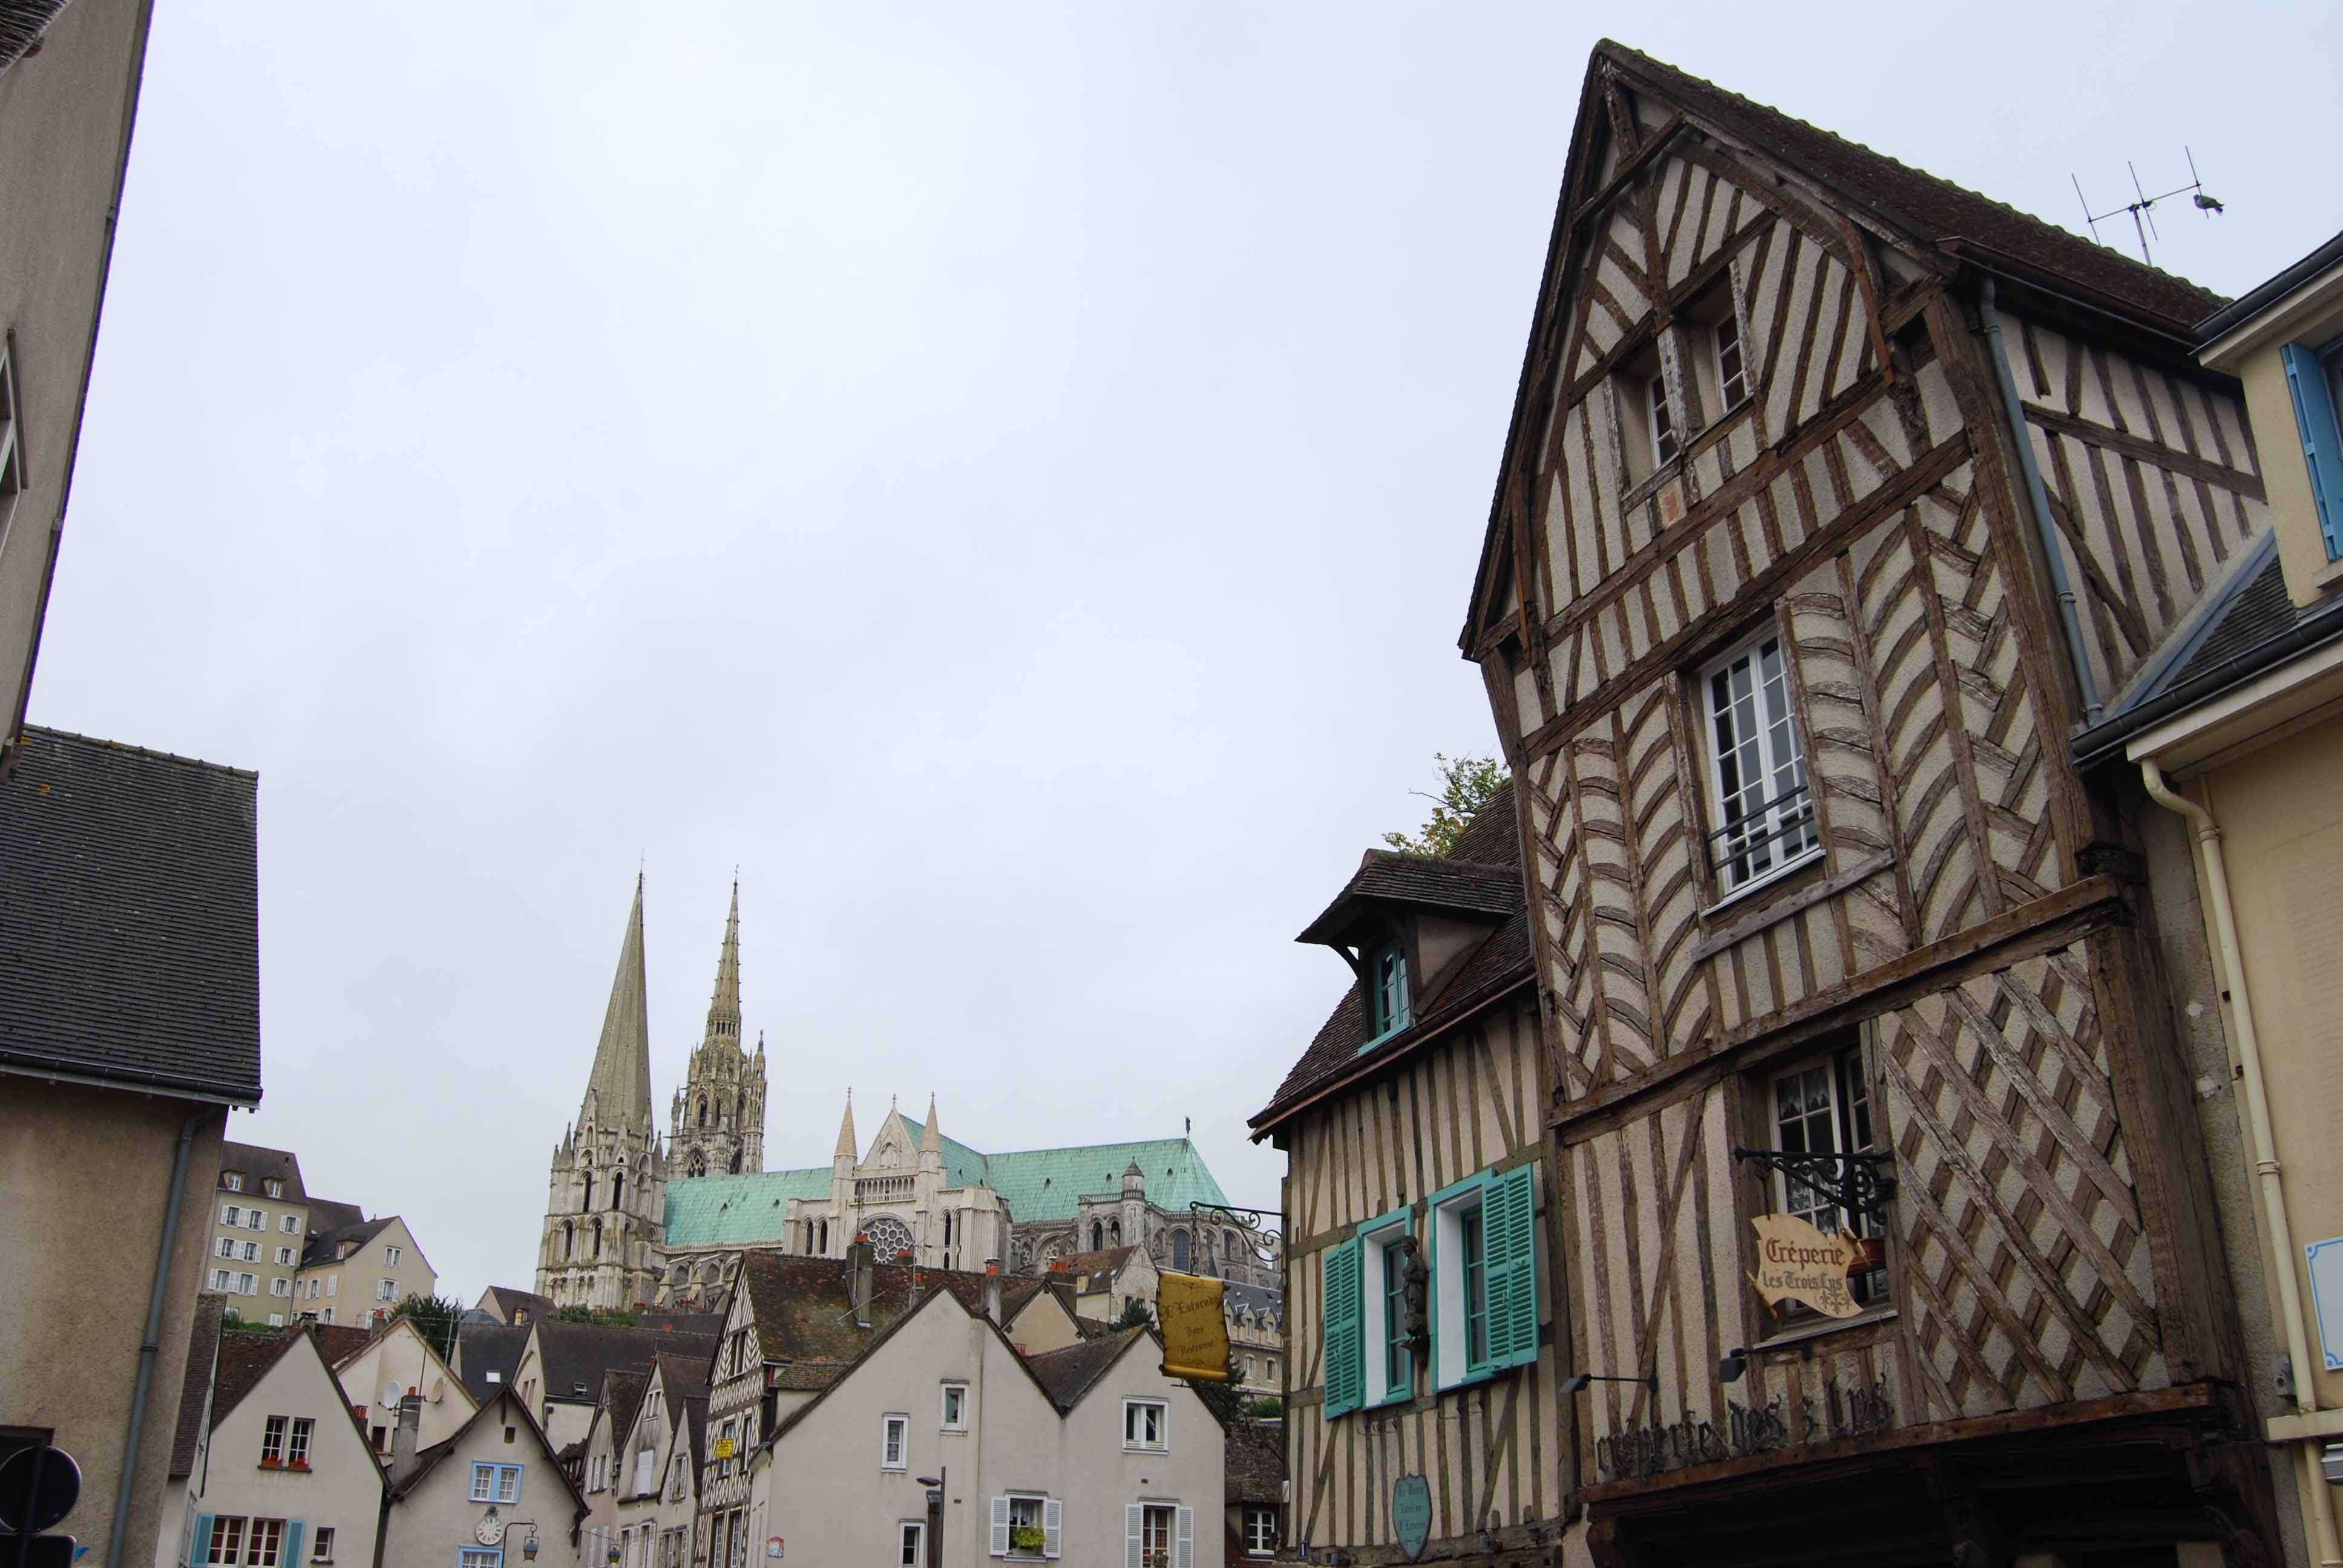 Un paseo por Chartres. Arte y Paisaje - Chartres: Arte, espiritualidad y esoterismo. (6)